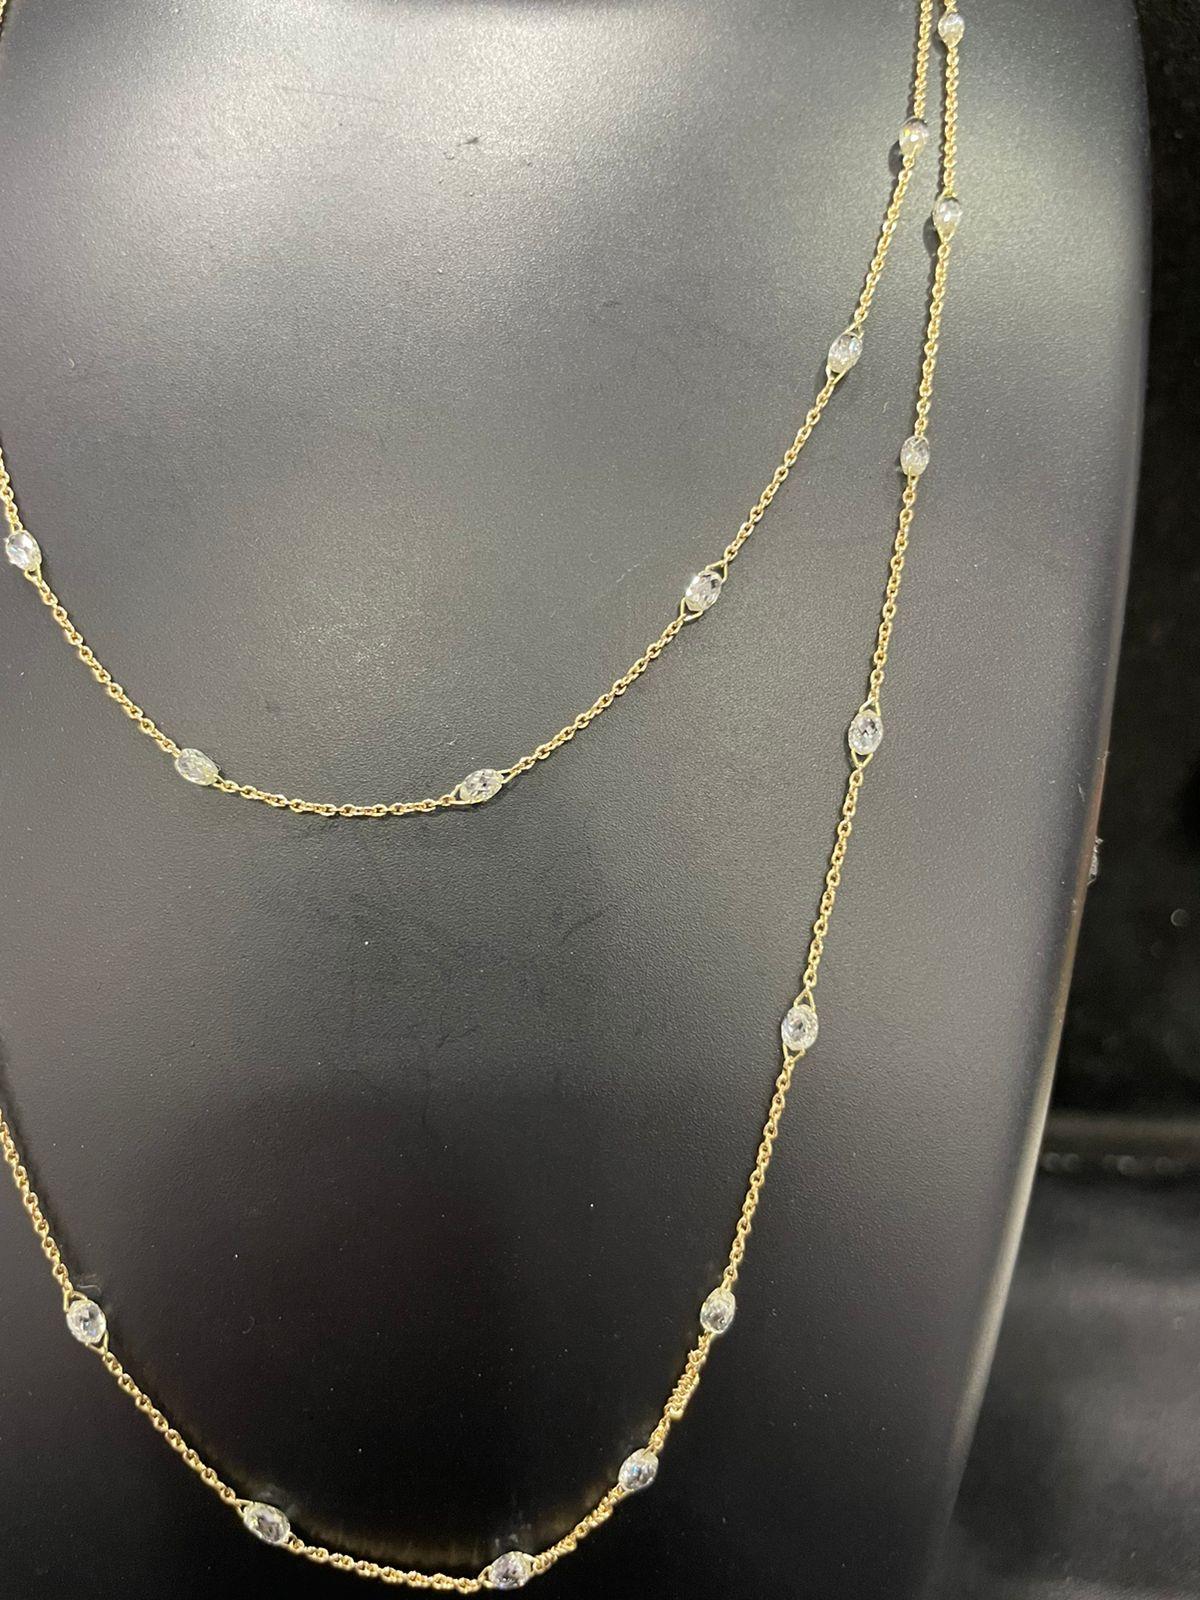 Briolette Cut PANIM Briolette Diamond Circles Necklace in 18 Karat Gold For Sale